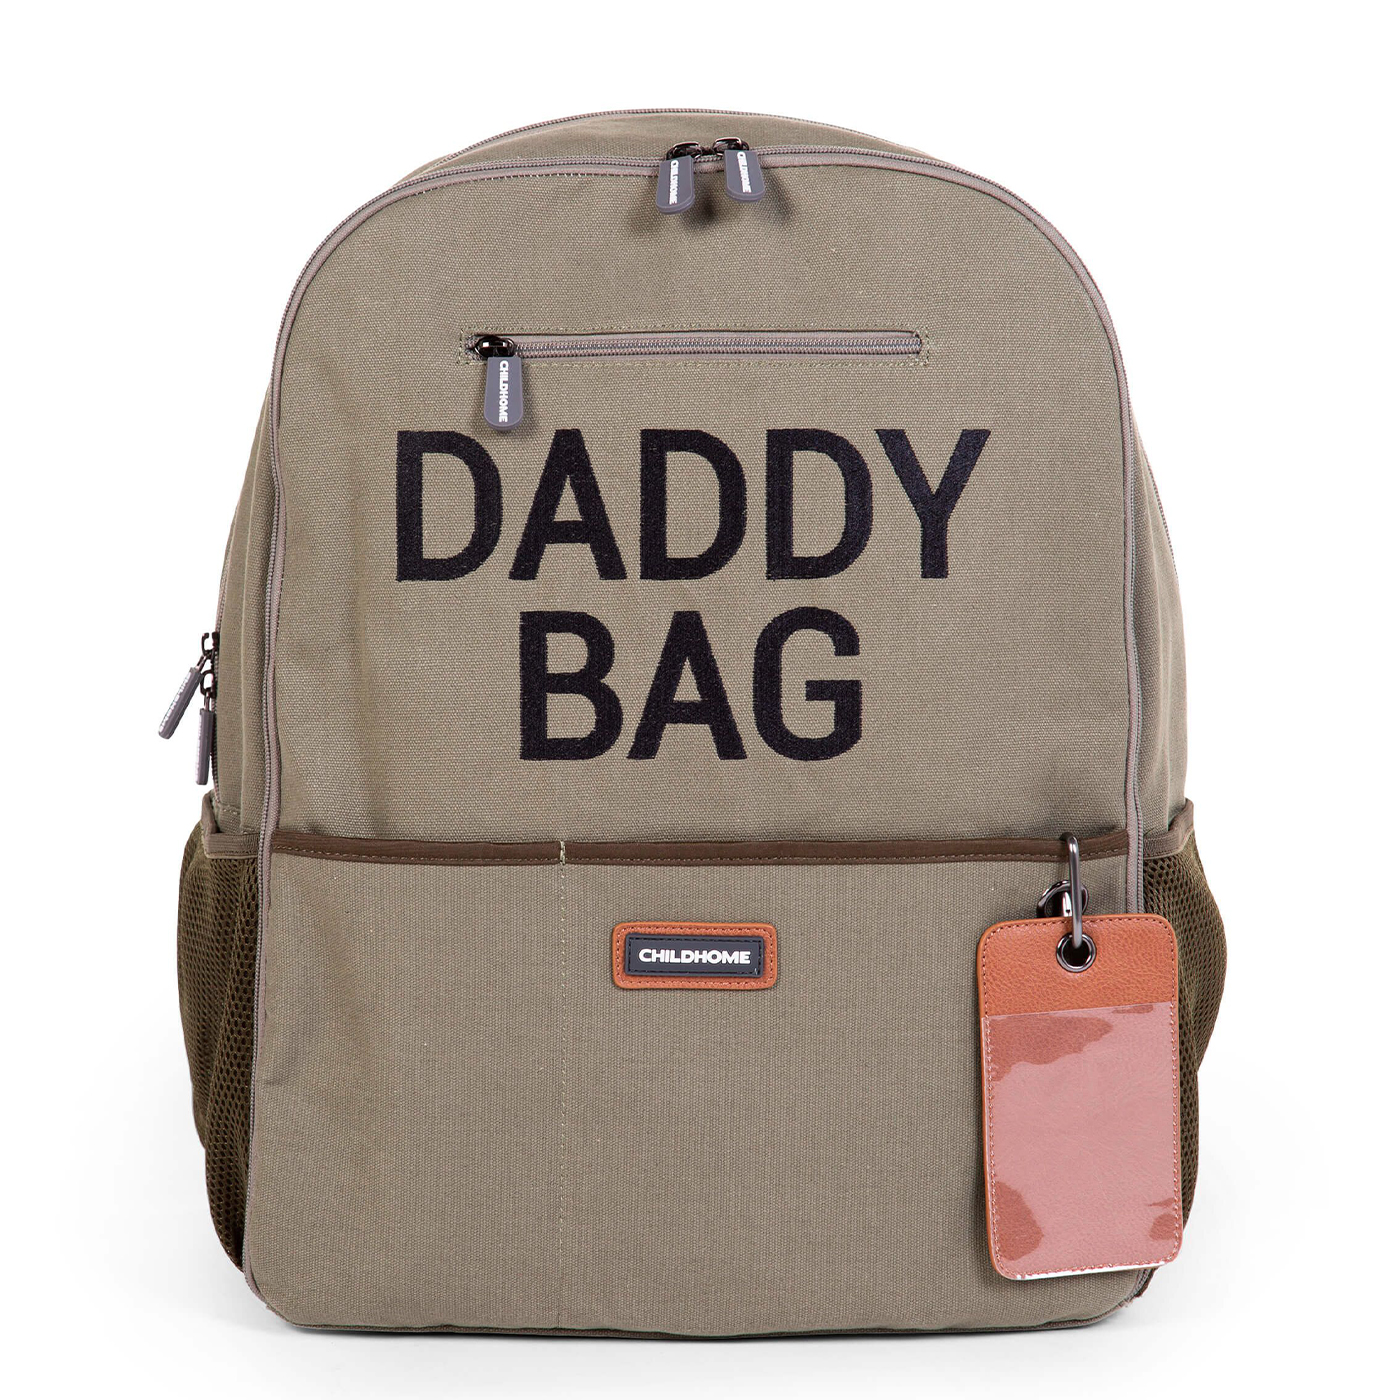 CHILDHOME Childhome Daddy Bag Sırt Çantası  | Haki